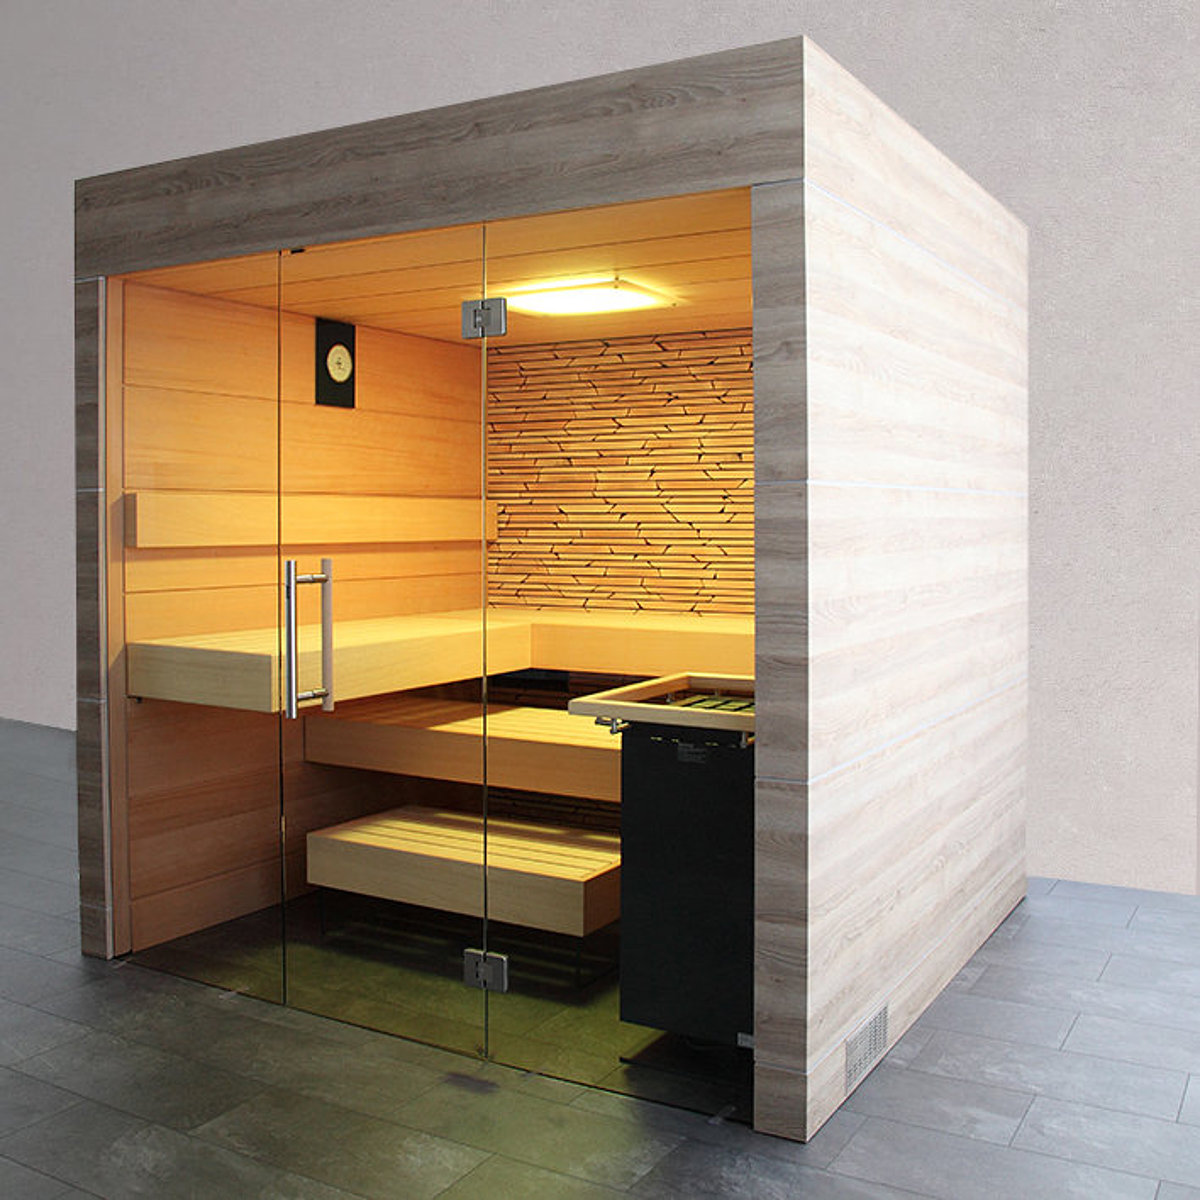 Eine Indoor-Sauna mit Dekorplatten und Beleuchtung.